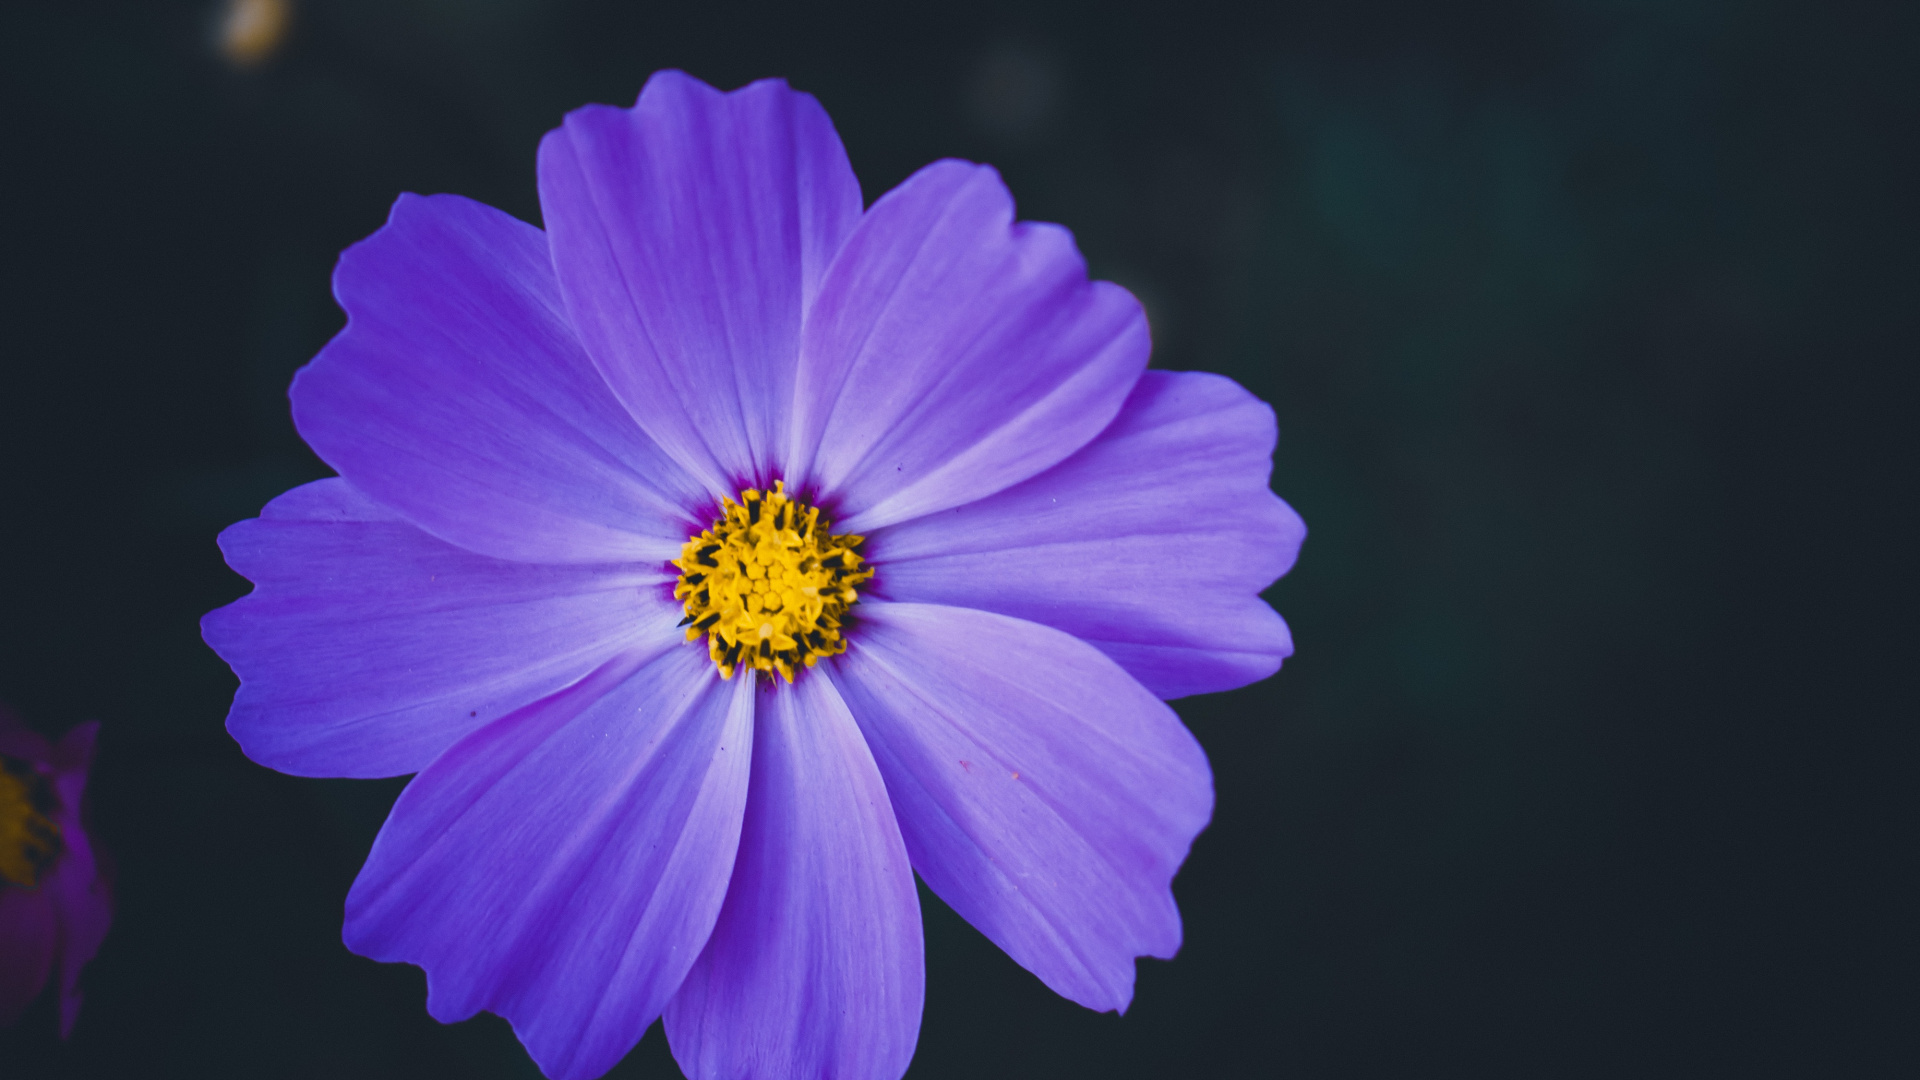 Purple Flower in Tilt Shift Lens. Wallpaper in 1920x1080 Resolution